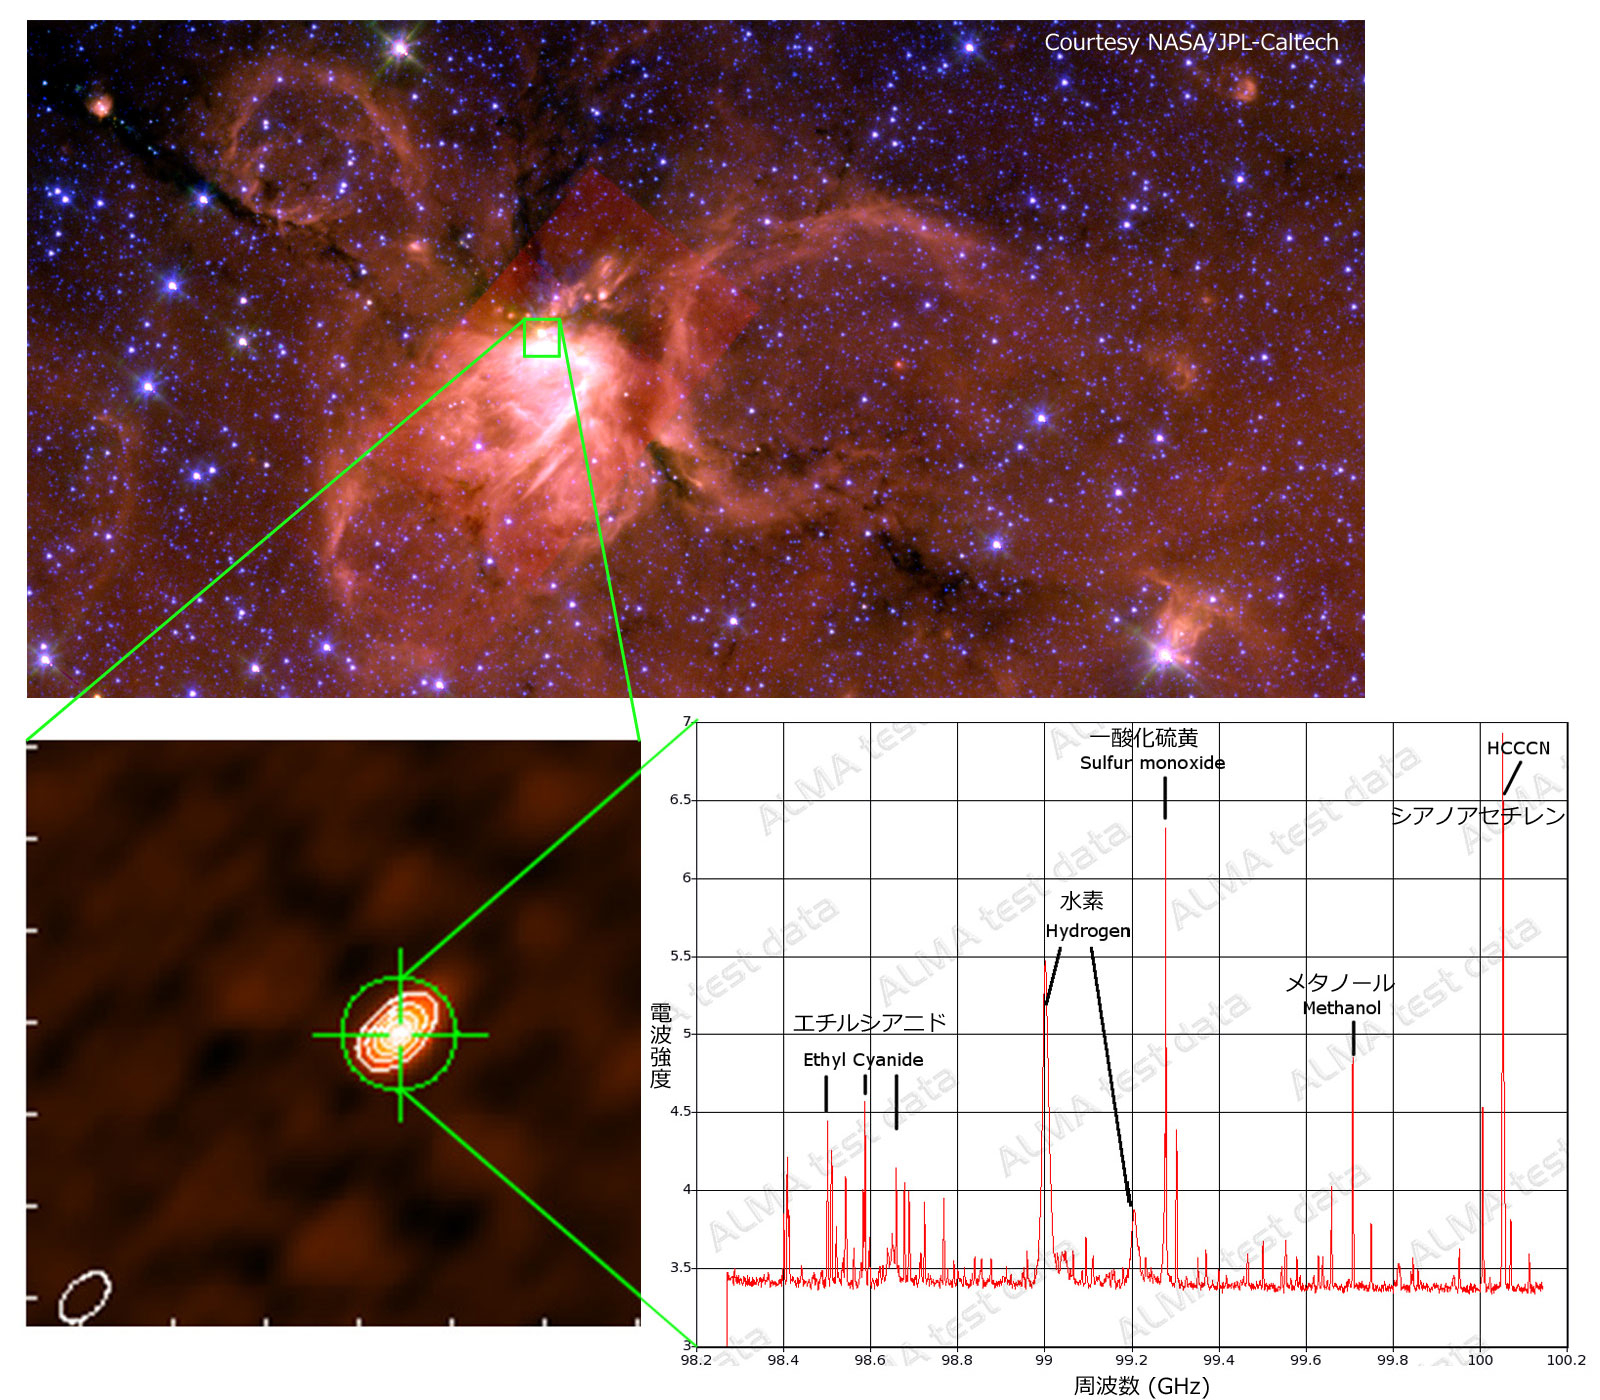 （上）赤外線で撮影された星形成領域G34.26+0.15。（下）アルマ望遠鏡（パラボラアンテナ7台）で取得されたG34.26+0.15の試験観測画像（左）とスペクトル（右）。右図の横軸は周波数、縦軸は電波の強度を表す。エチルシアニド(C2H5CN)やシアノアセチレン(HC3N)のような炭素を豊富に含む有機分子が放つ電波が検出されているほか、様々な分子が放出する非常に多様な電波が櫛のように見えている。これはアルマ望遠鏡が非常に高い感度を持つことを示している。